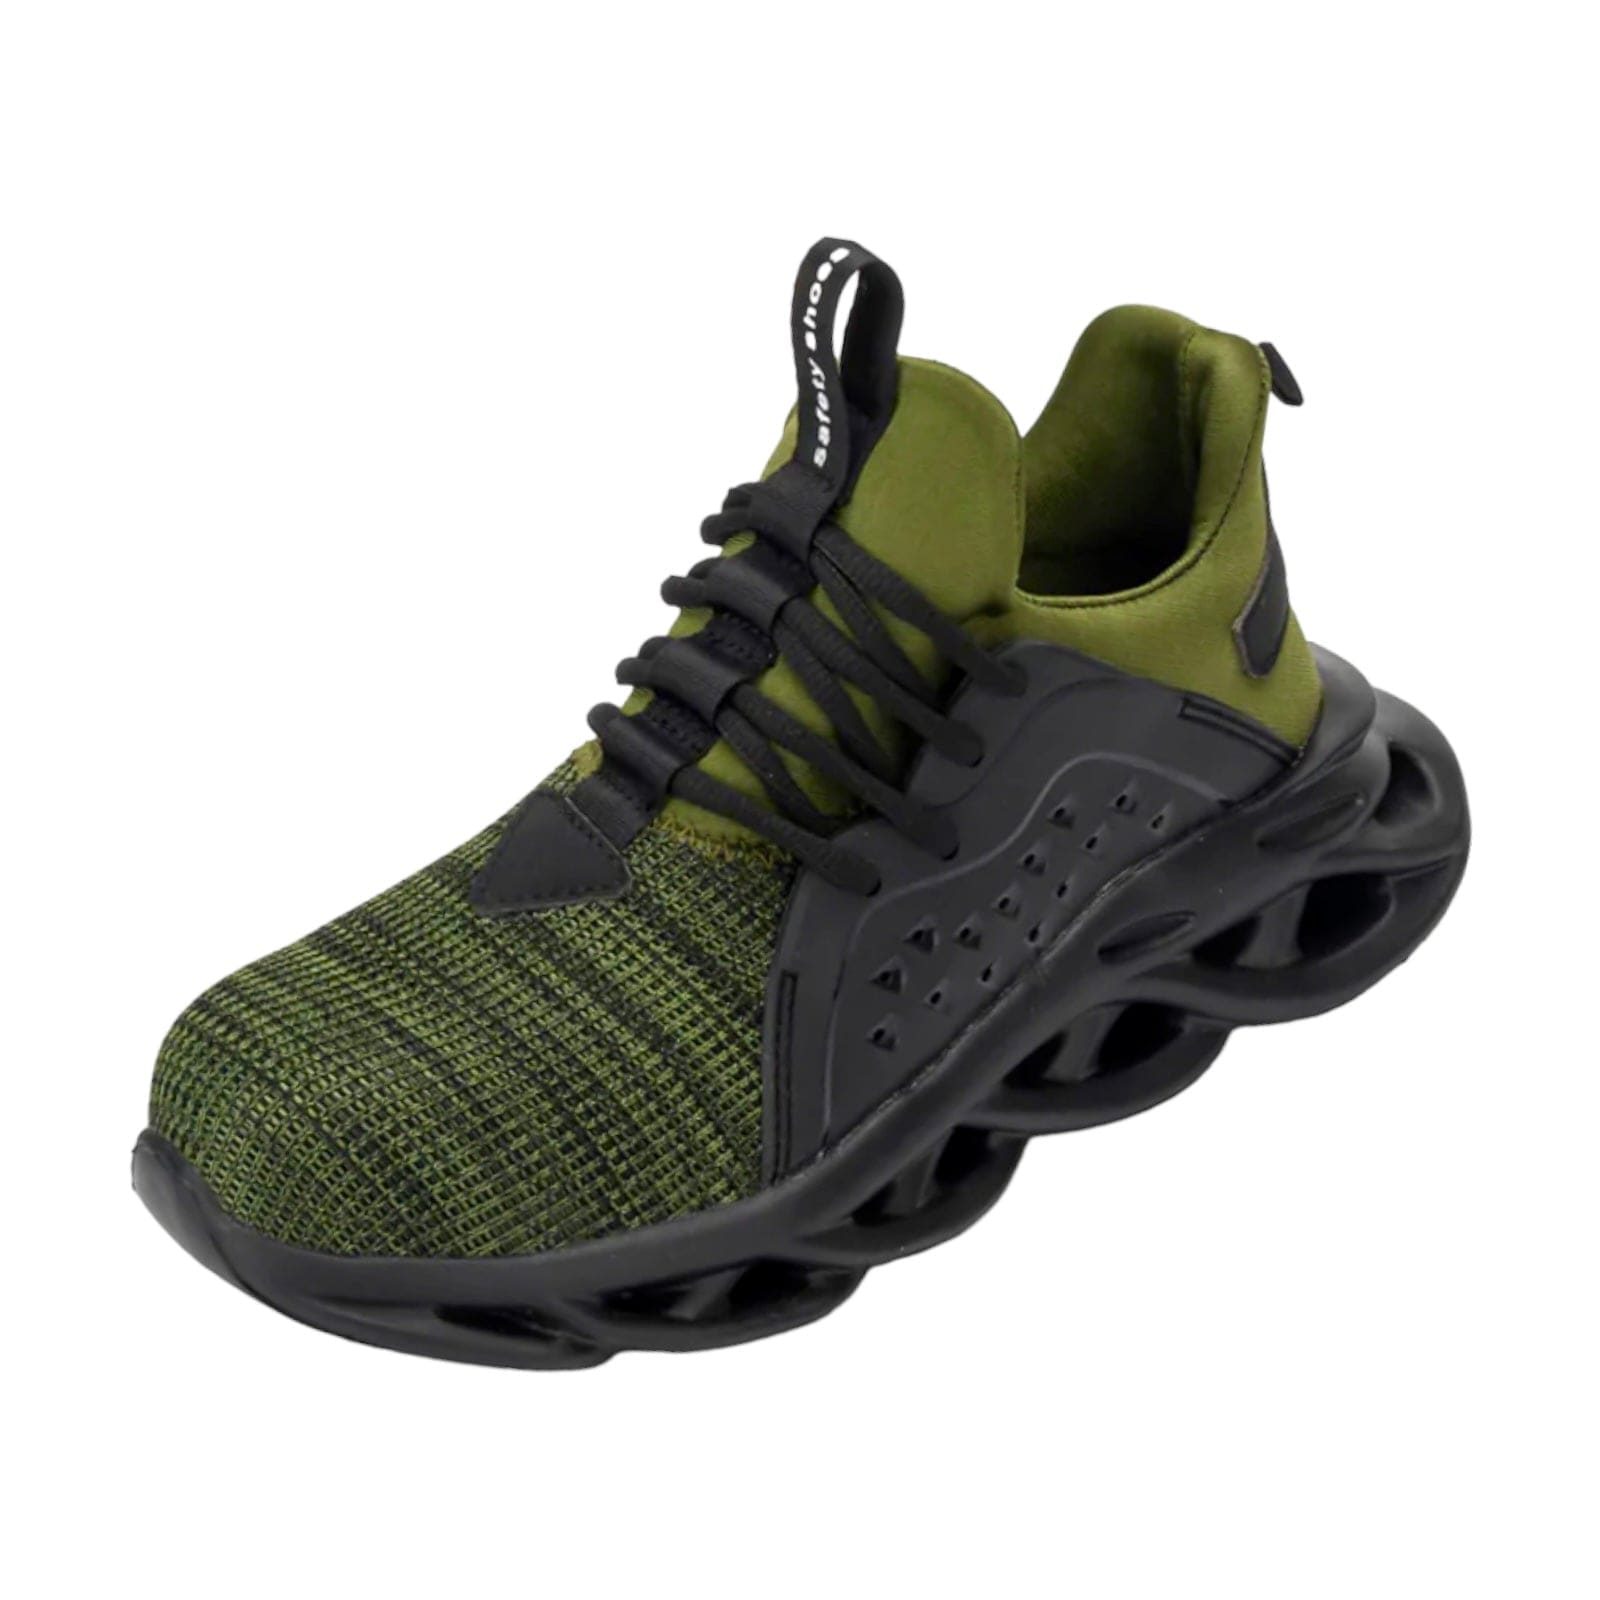 black green sneakers kraken flashlander left side indestructible men shoes